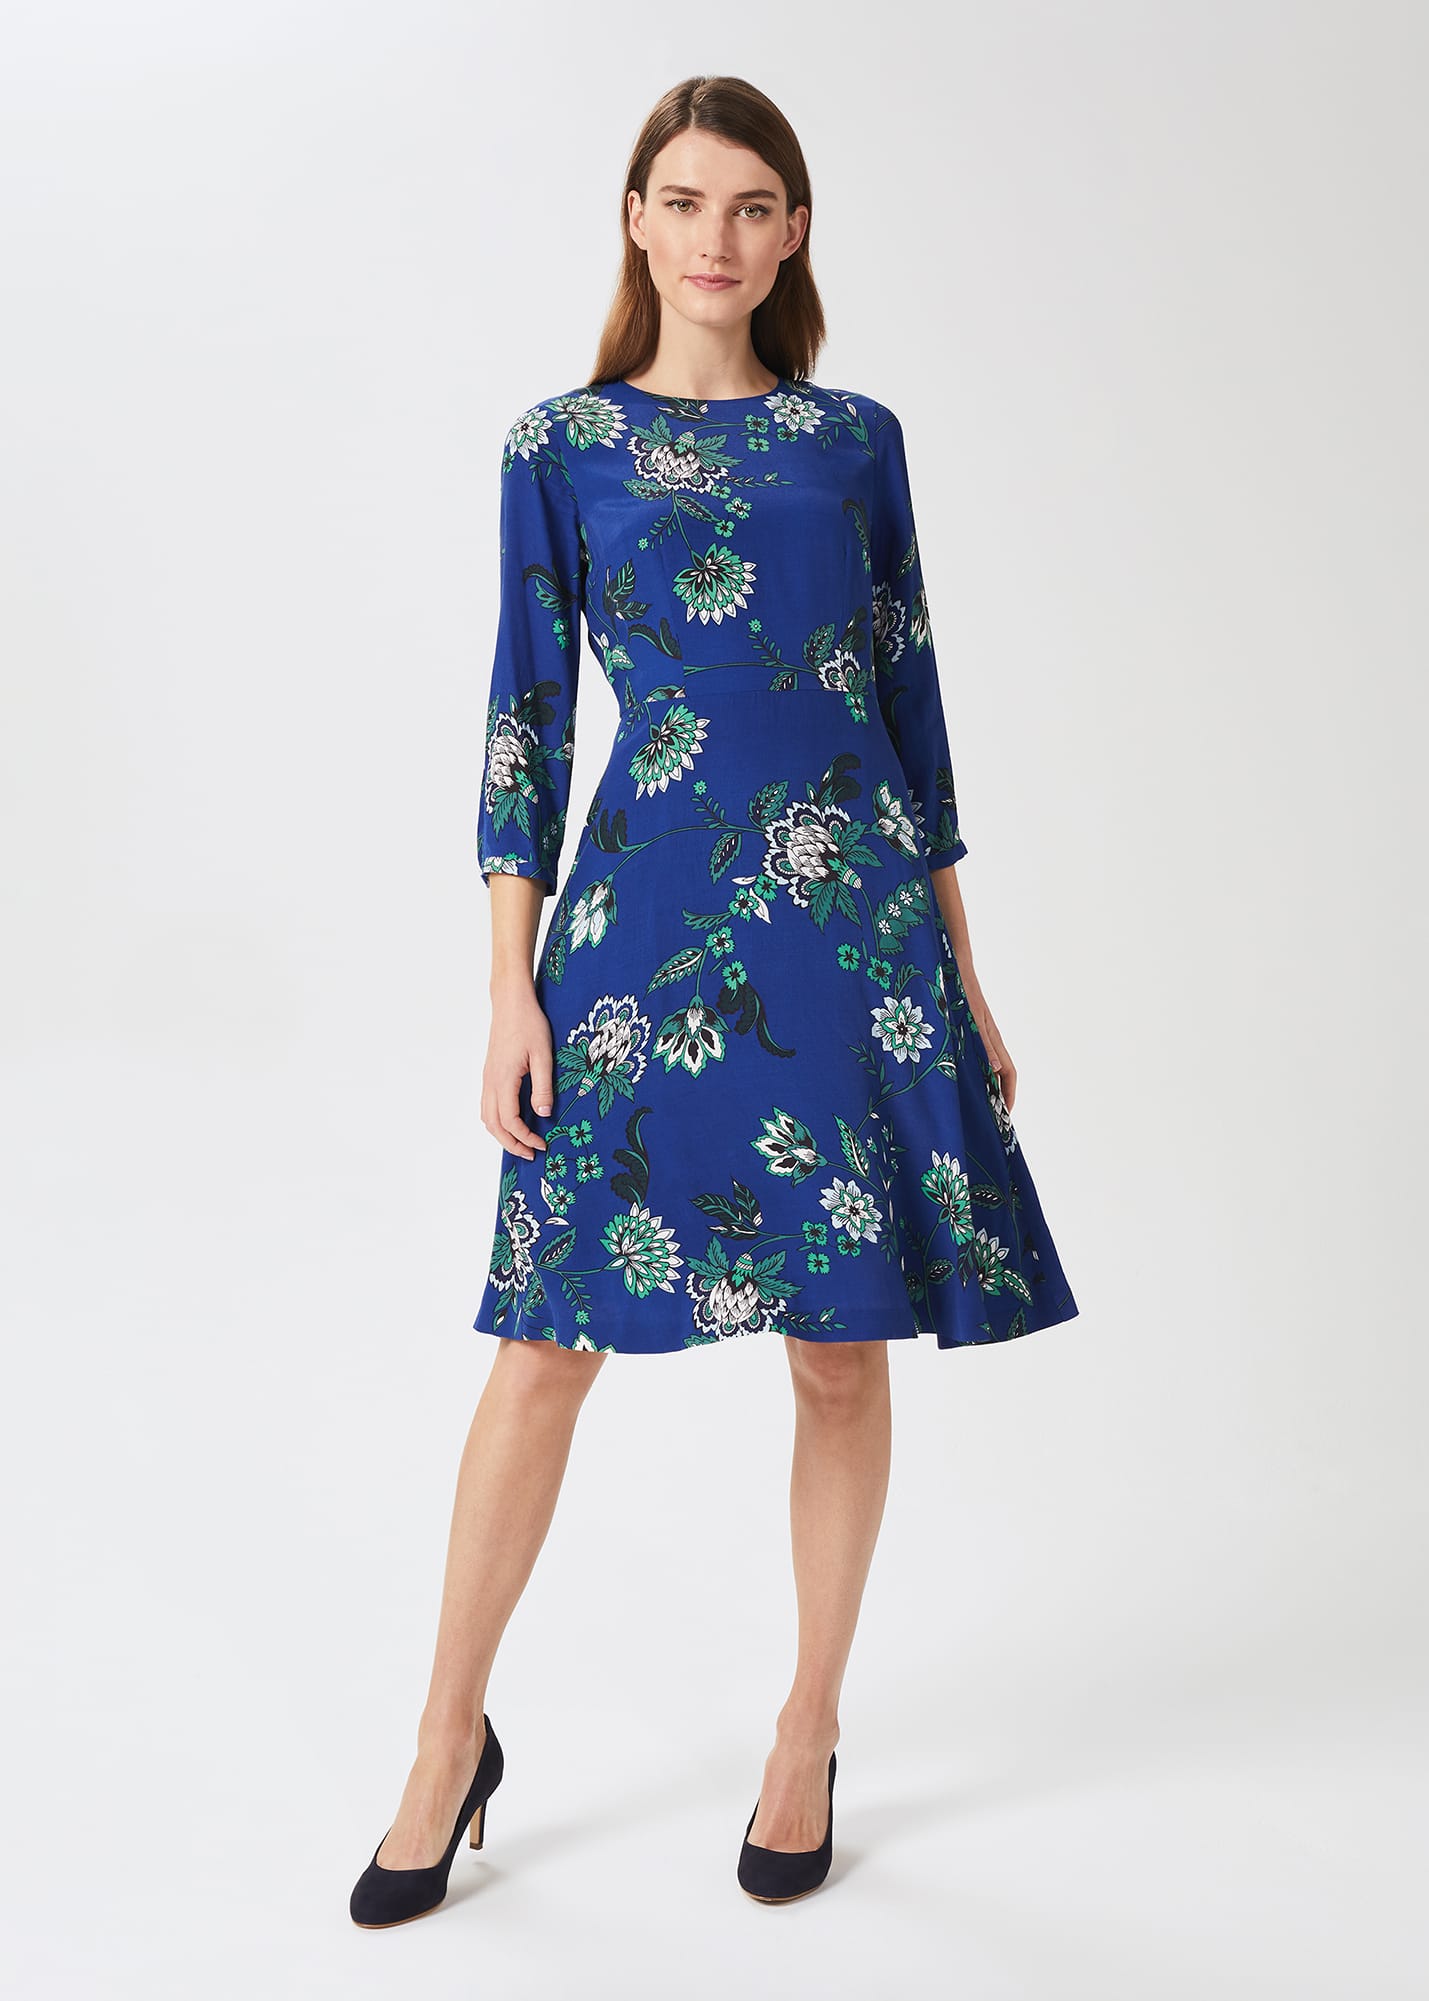 Hobbs Women's Marietta Floral Dress - Azure Apple Grn